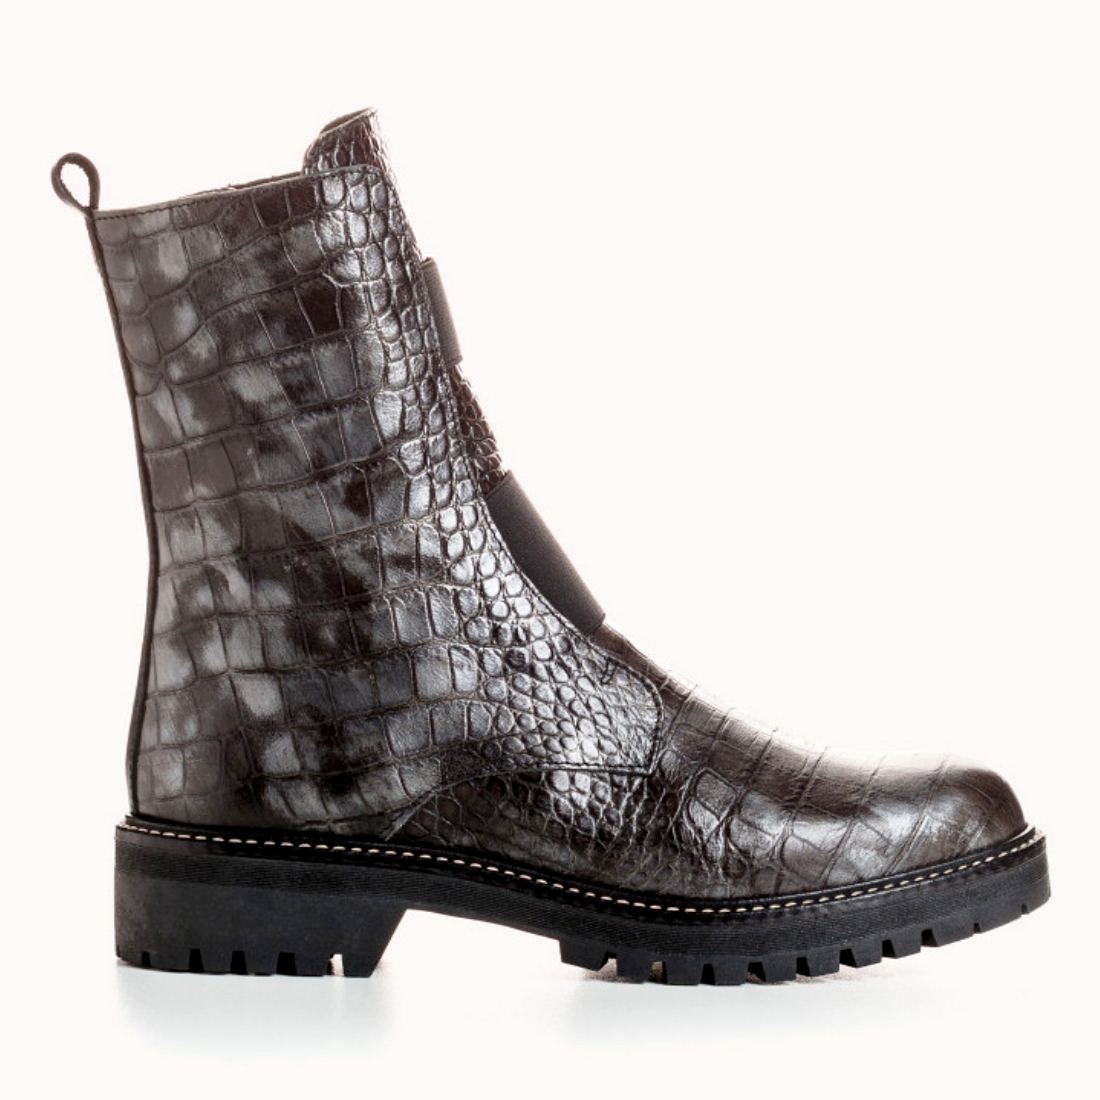 Boots Montantes Femme Gris de REQINS modèle Dusky-Alligator  MINI PRIX